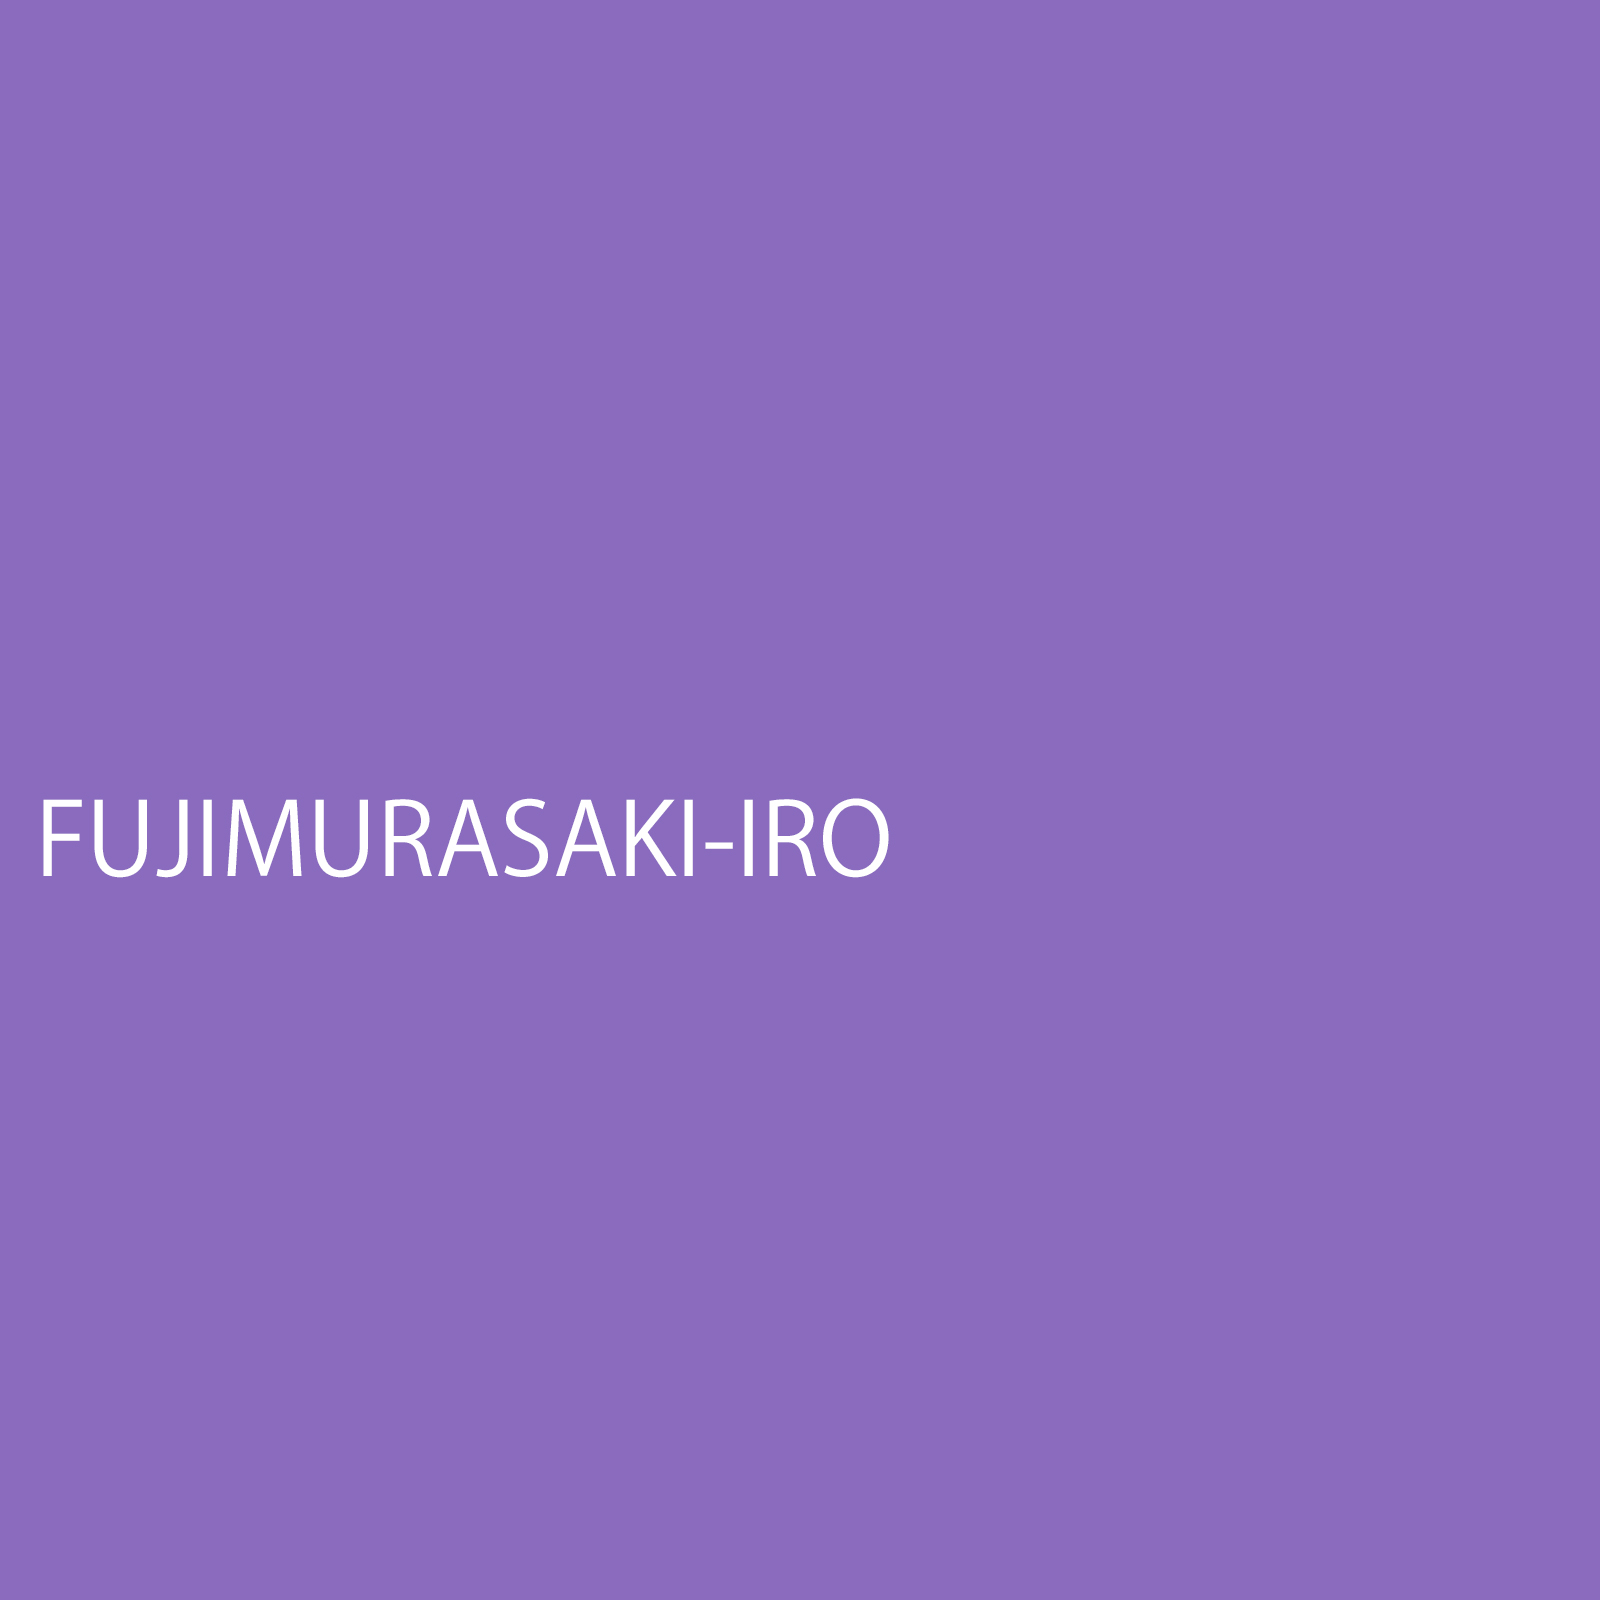 fujimurasakiiro.jpg